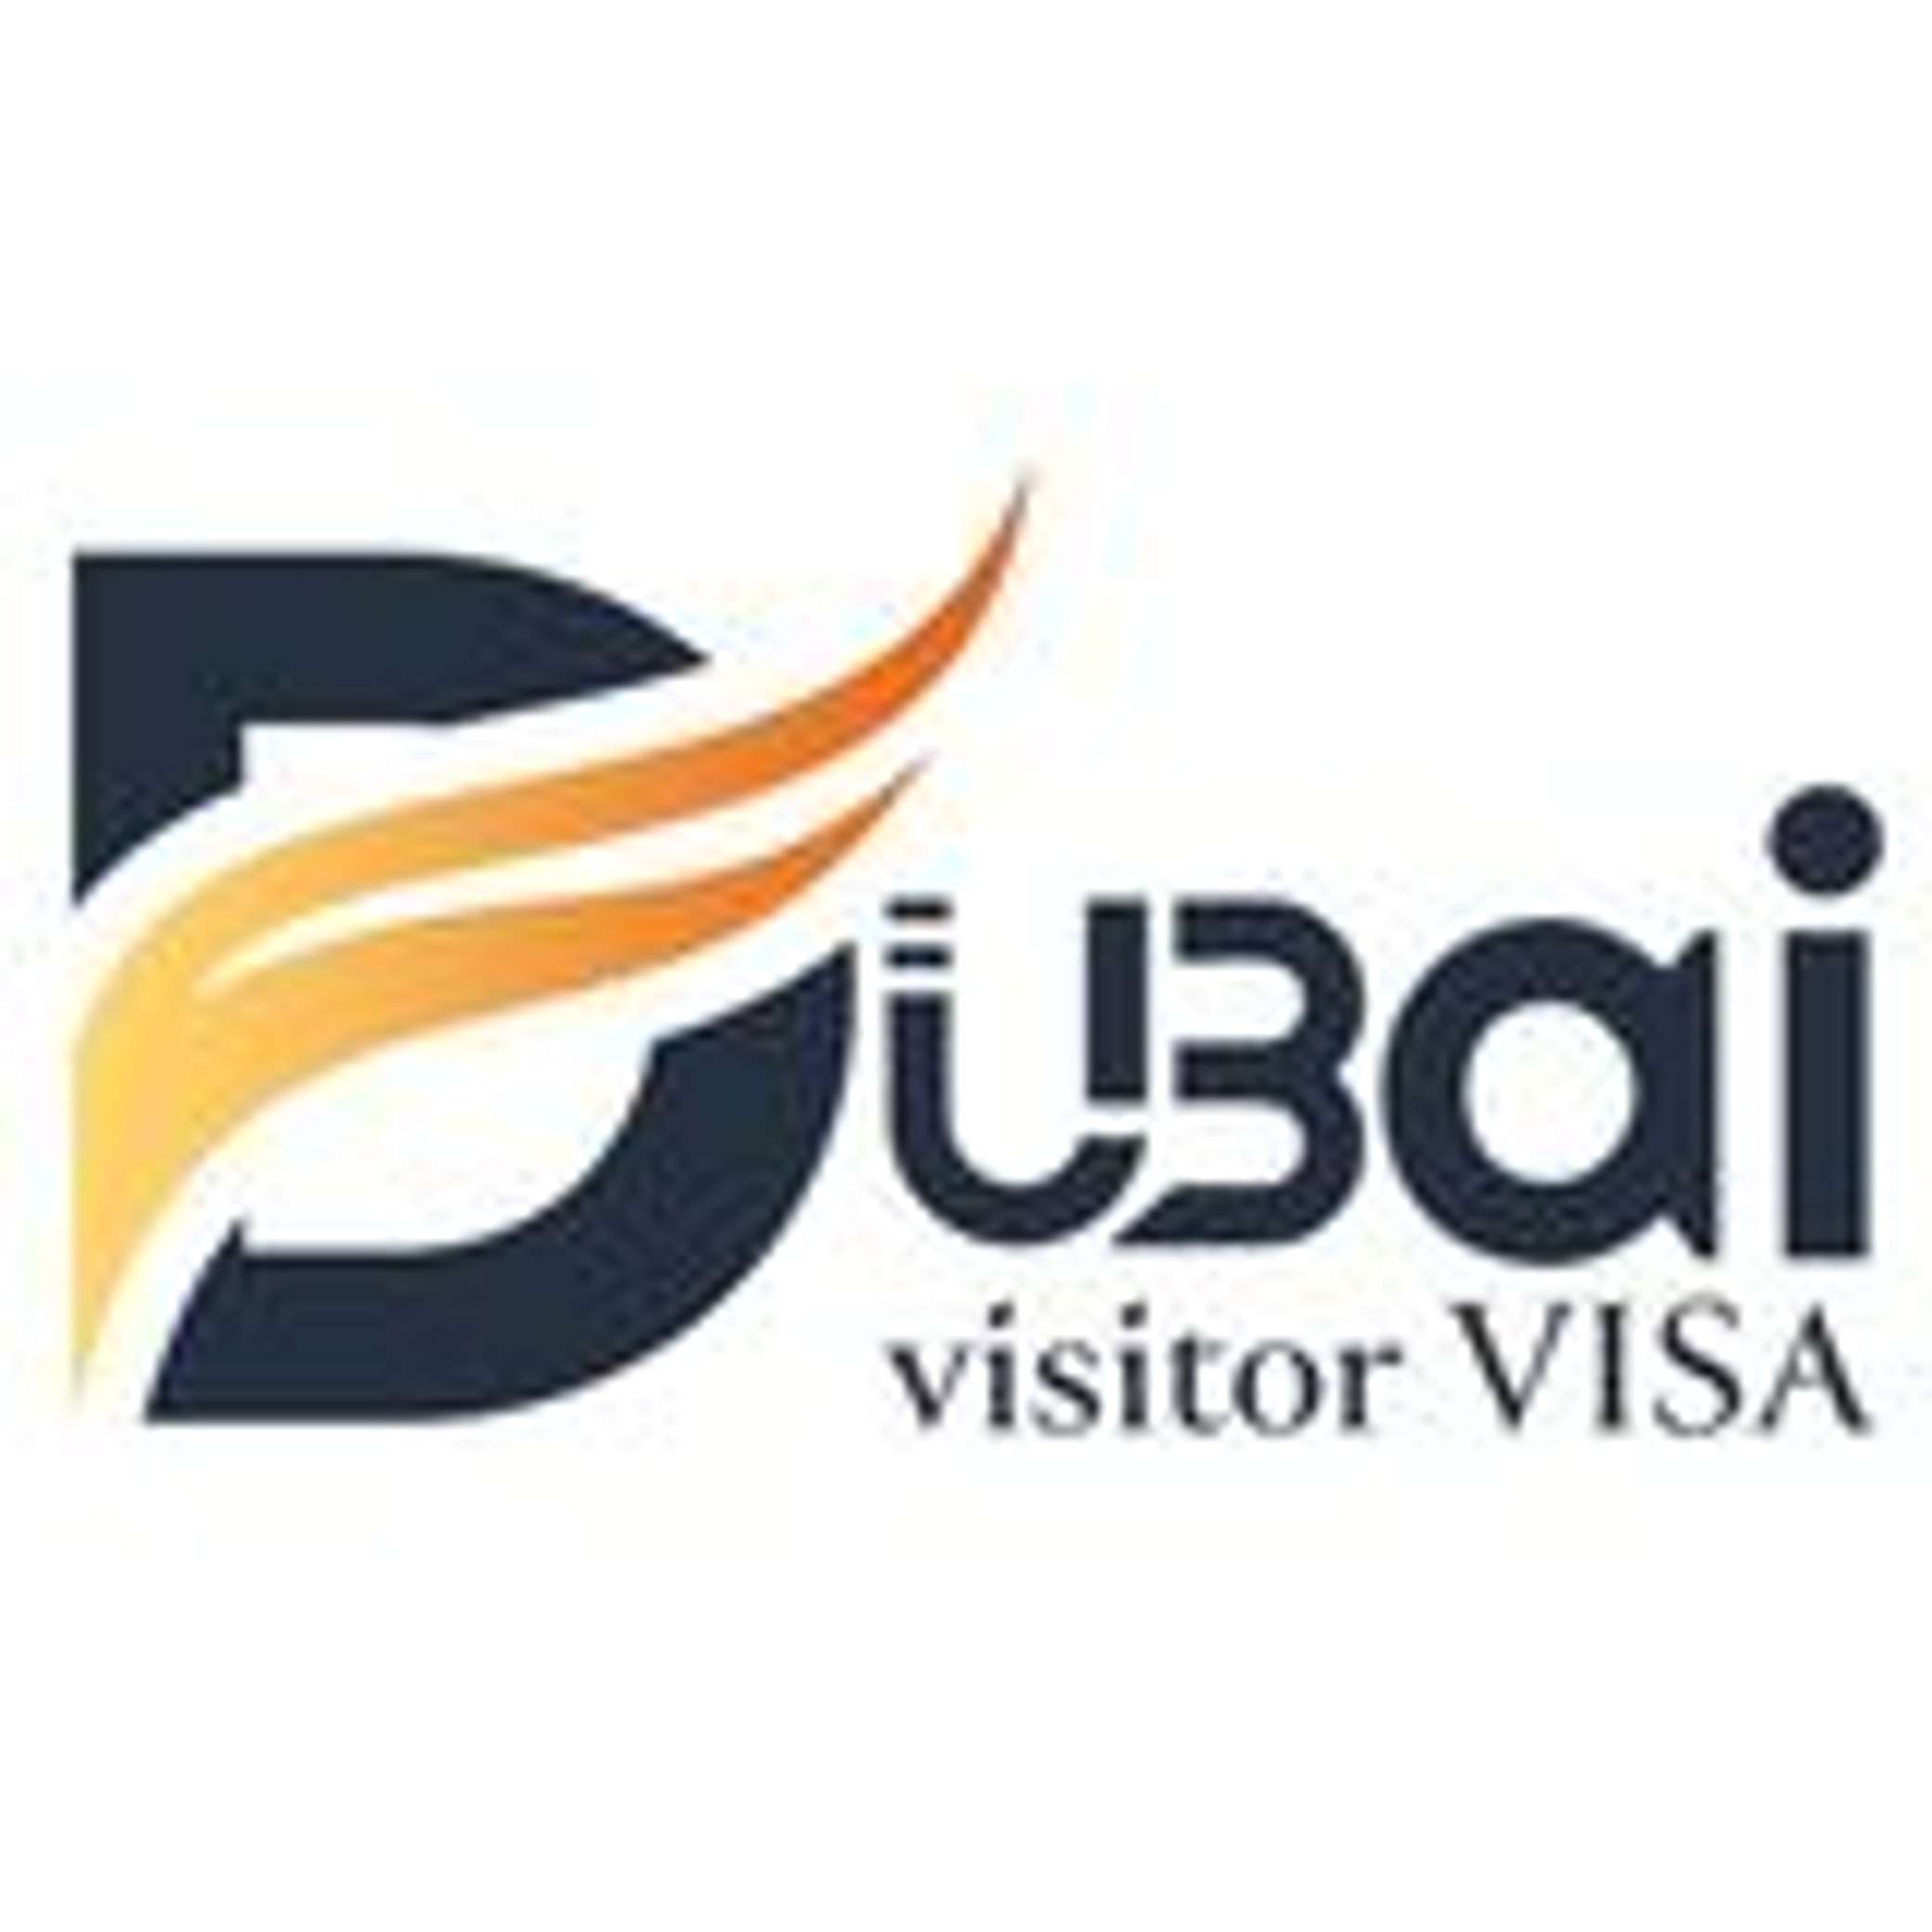 Dubai Visitor Visa Profile Picture